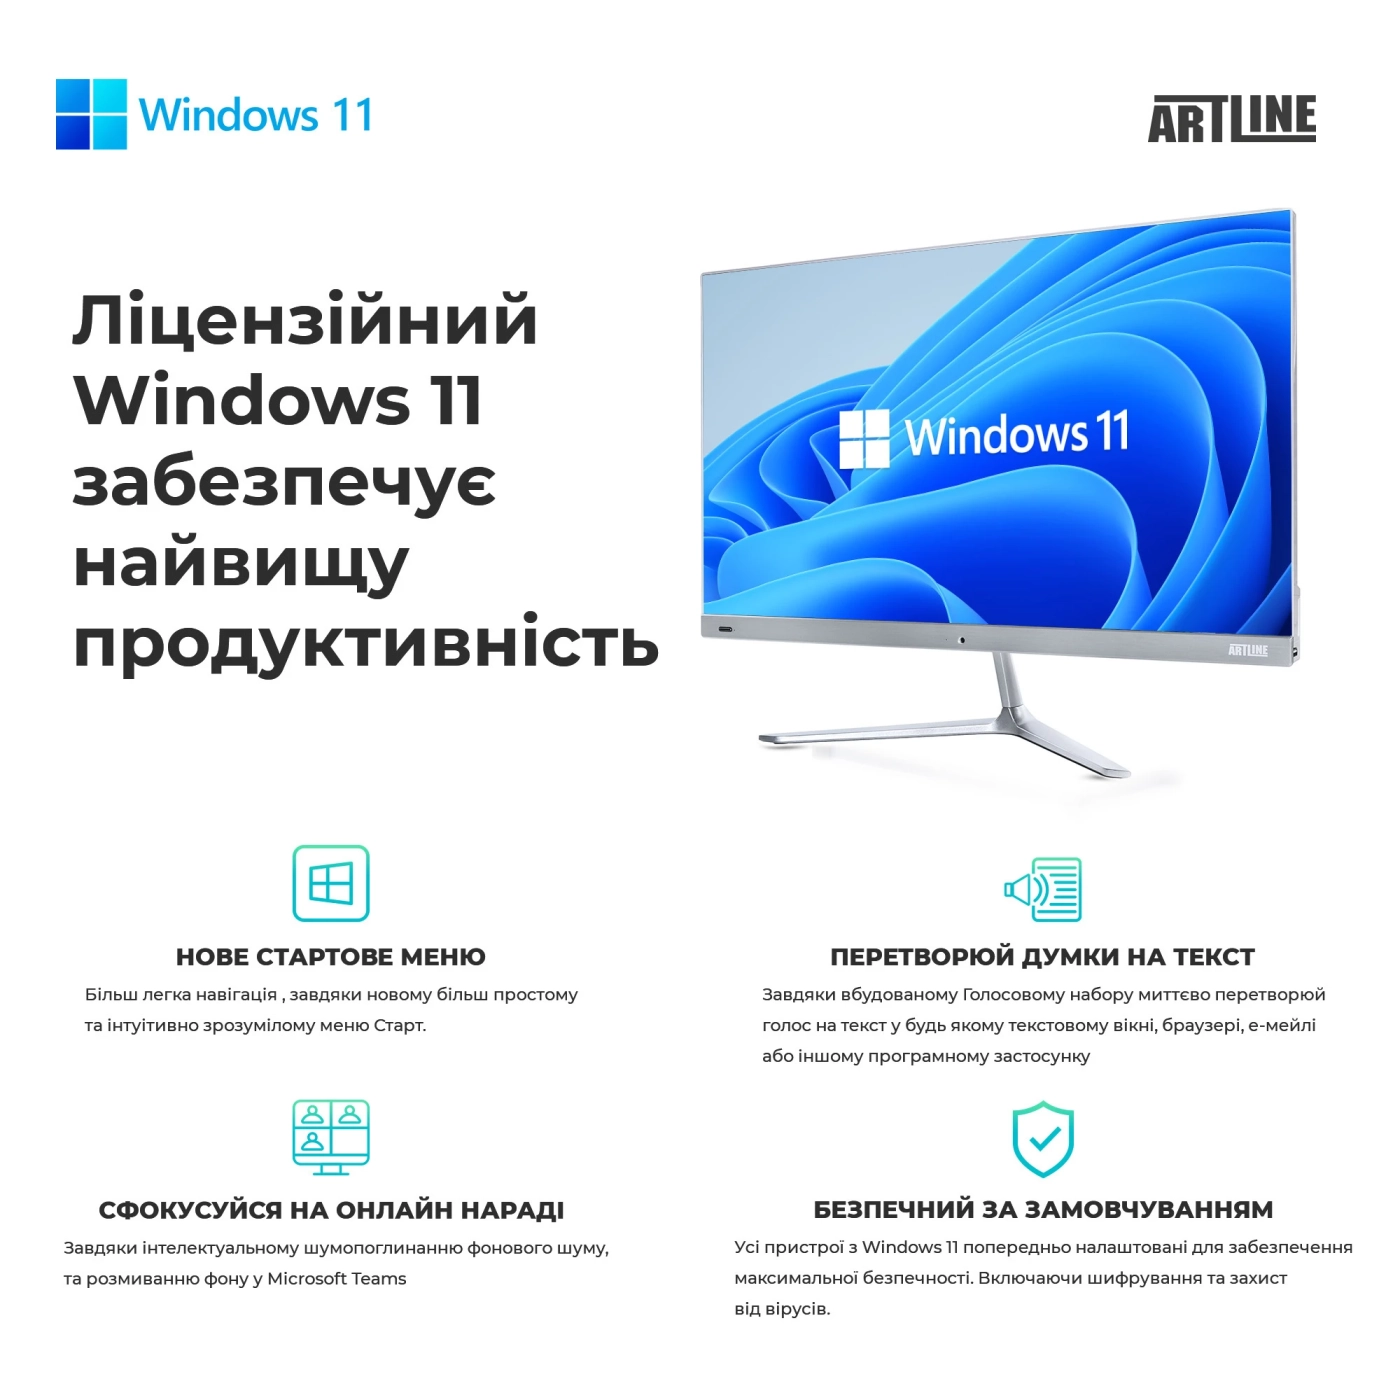 Купить Рабочая станция ARTLINE WorkStation W52 Windows 11 Pro (W52v25Win) - фото 9